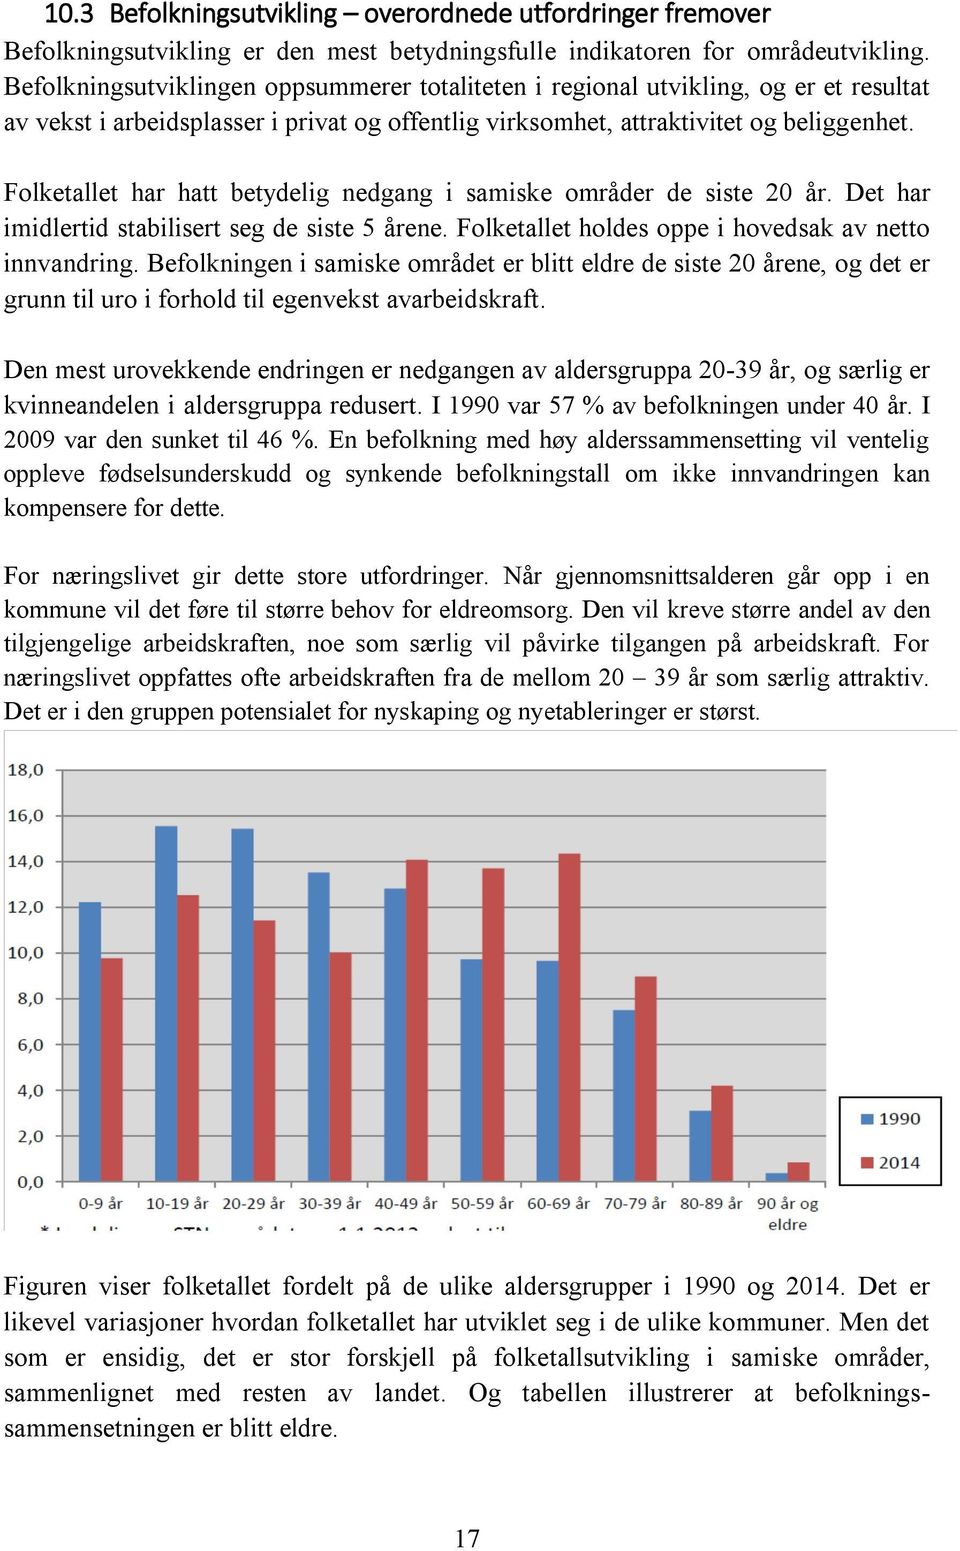 Folketallet har hatt betydelig nedgang i samiske områder de siste 20 år. Det har imidlertid stabilisert seg de siste 5 årene. Folketallet holdes oppe i hovedsak av netto innvandring.